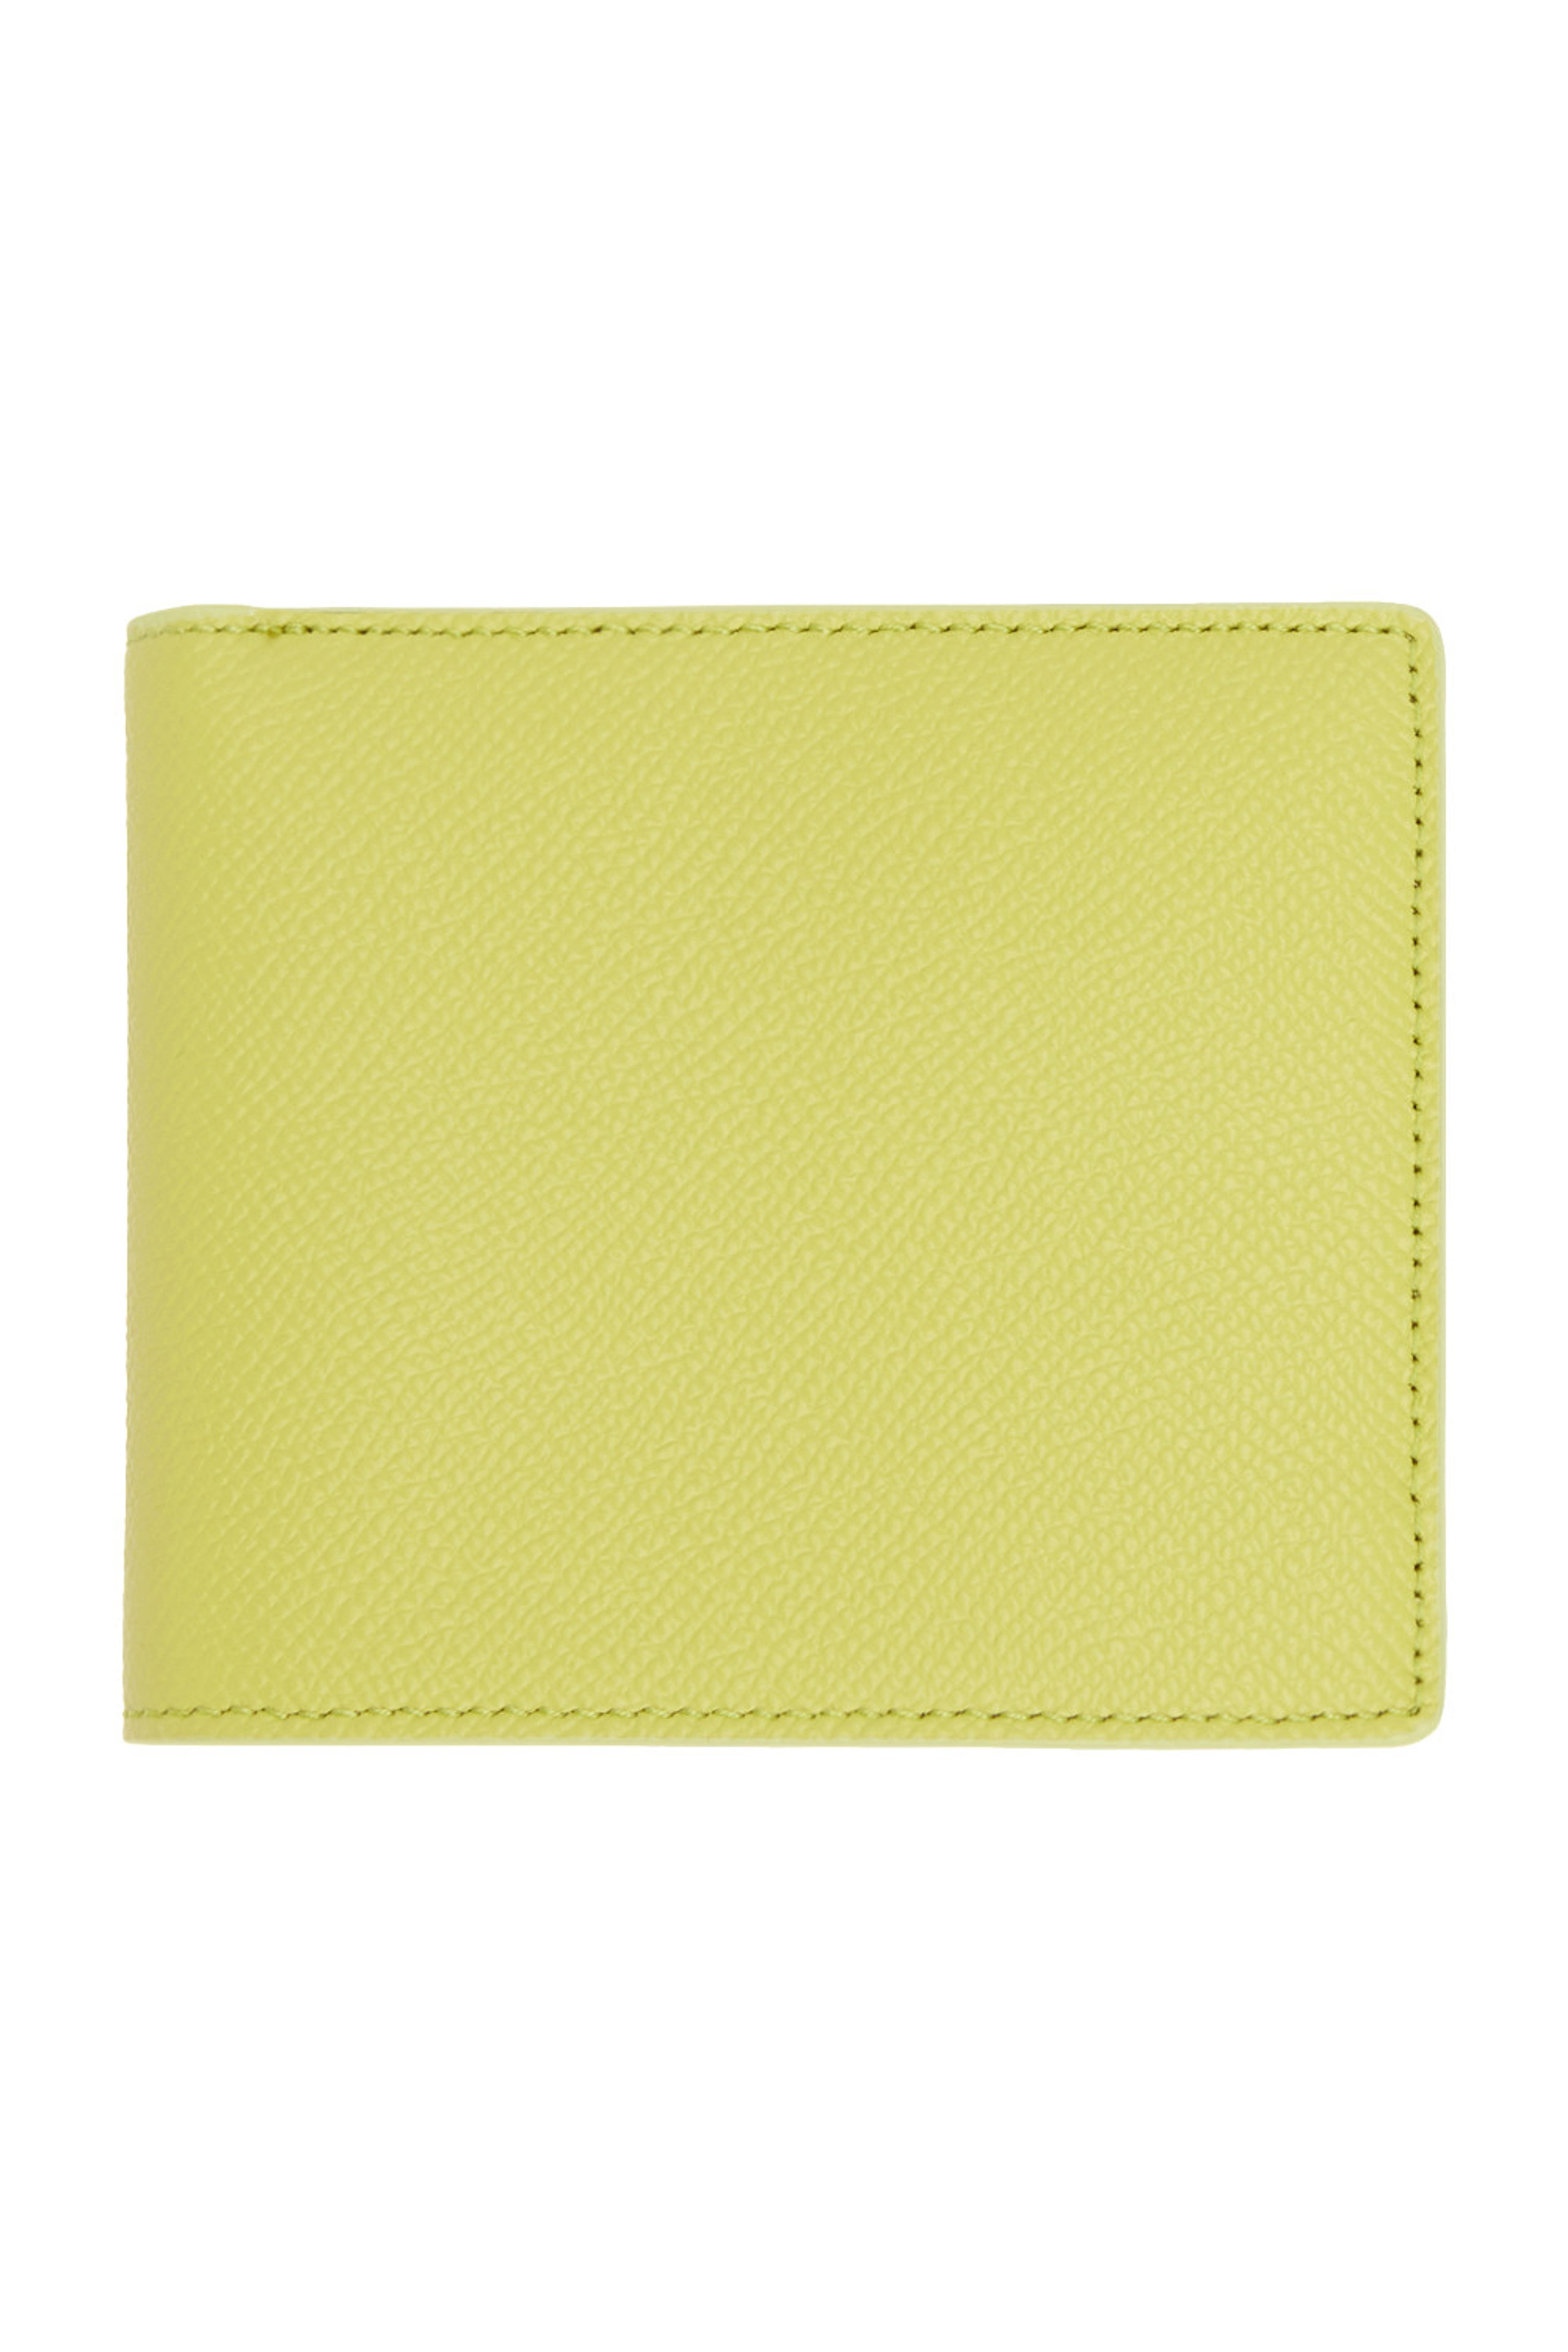 Maison Margiela - Yellow Four Stitches Wallet